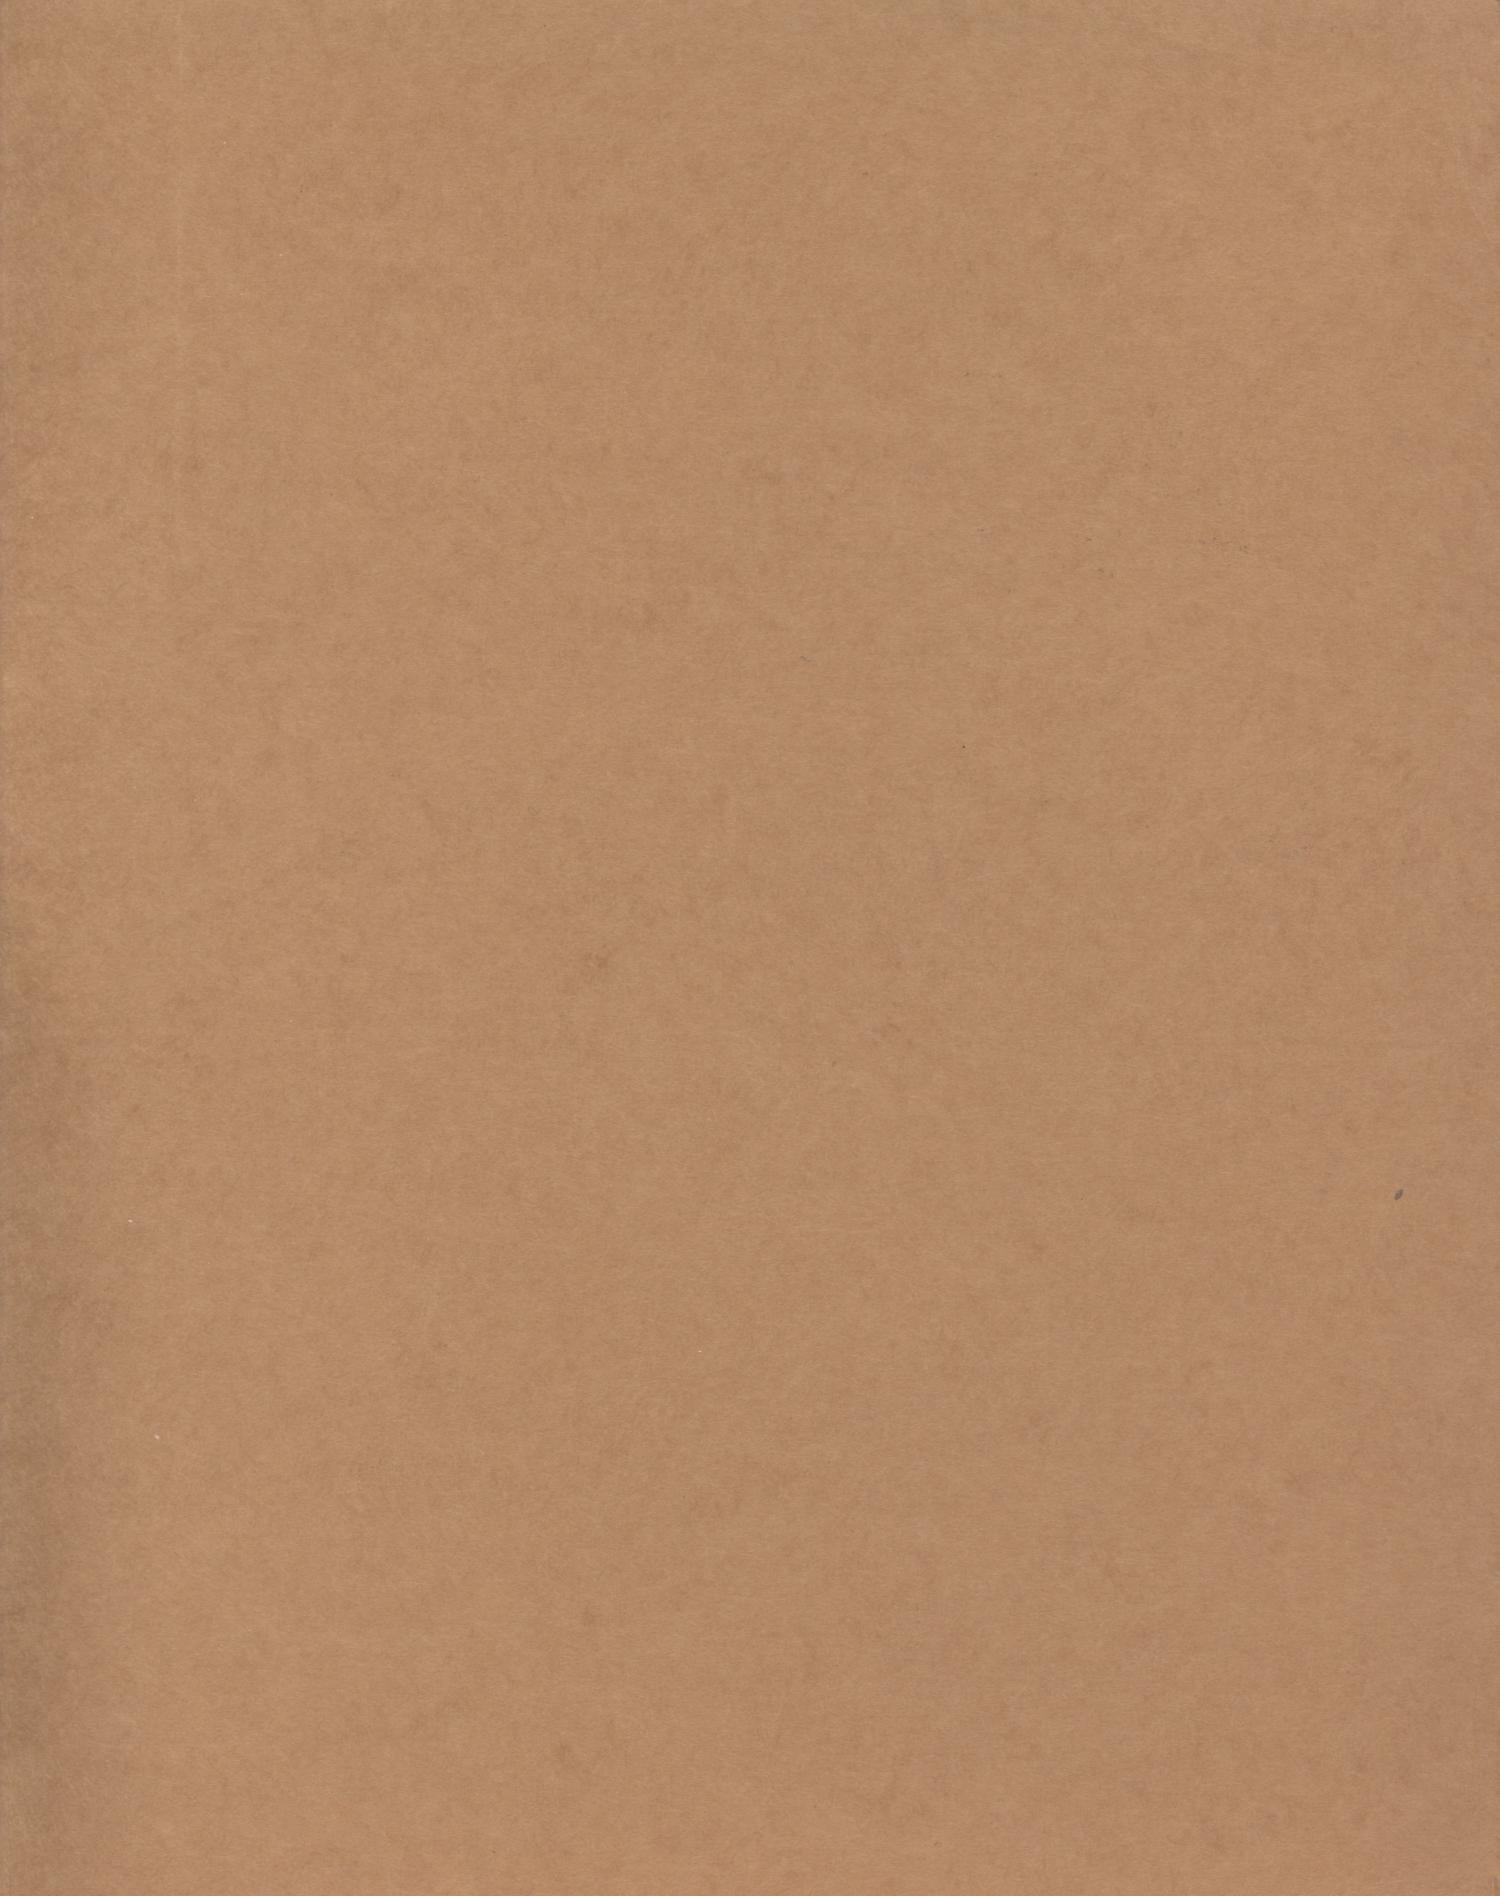 Black Gold, Volume 4, Number 1, 1978
                                                
                                                    Front Inside
                                                